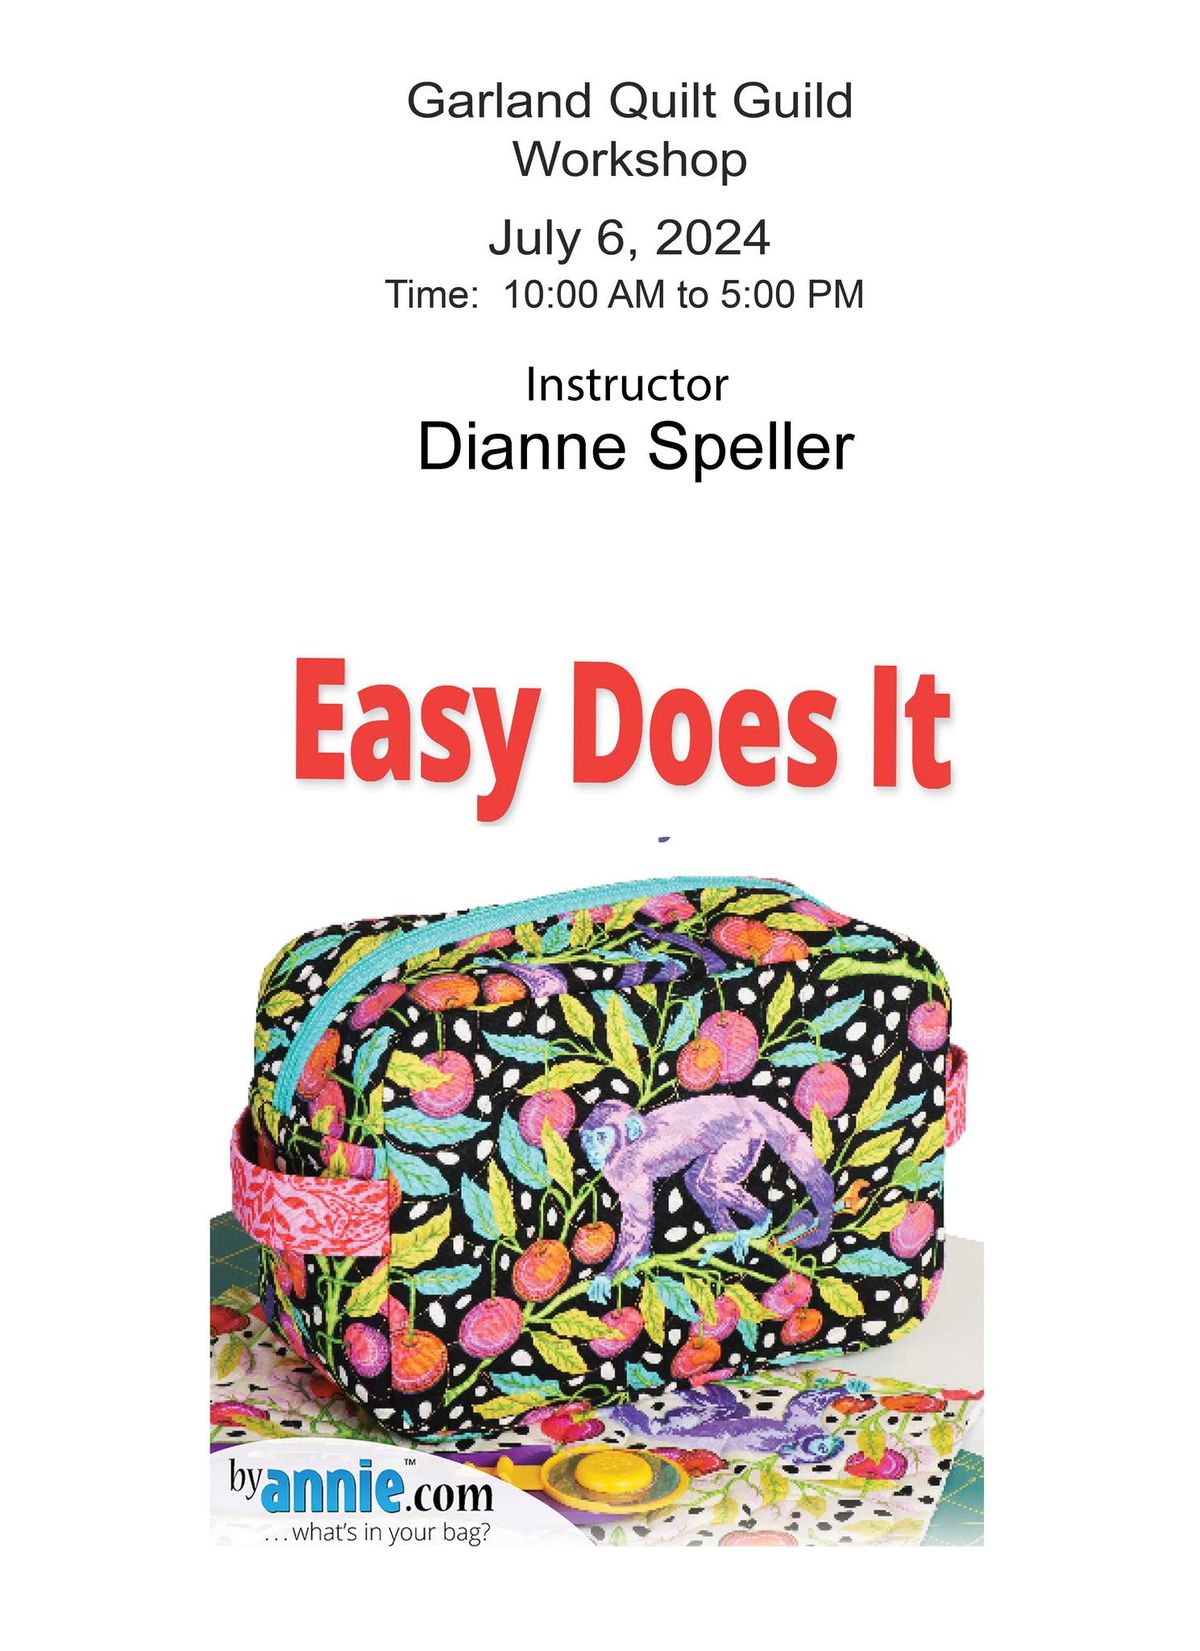 Easy-Does-it Bag Workshop with Dianne Speller